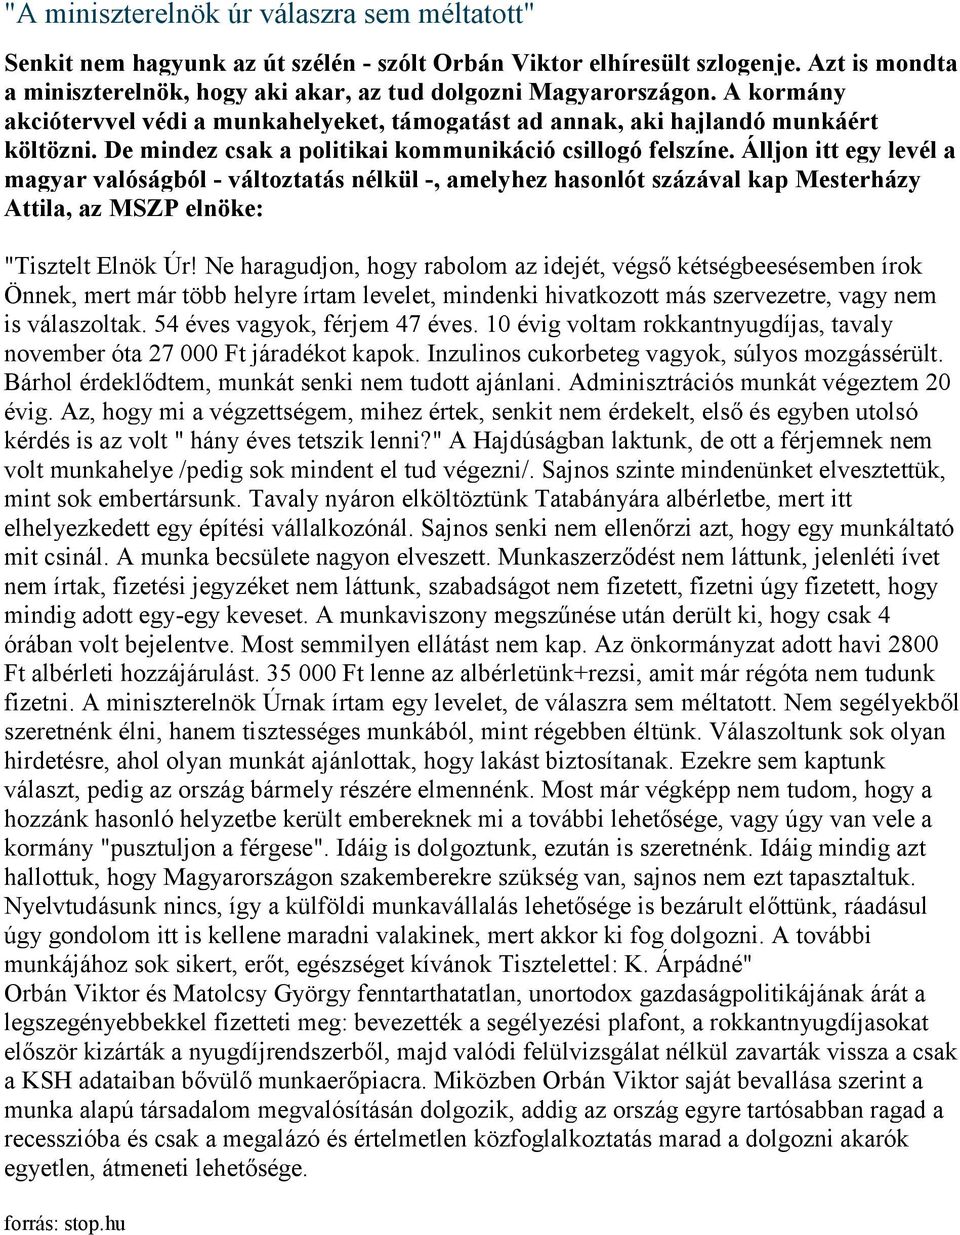 Álljon itt egy levél a magyar valóságból - változtatás nélkül -, amelyhez hasonlót százával kap Mesterházy Attila, az MSZP elnöke: "Tisztelt Elnök Úr!